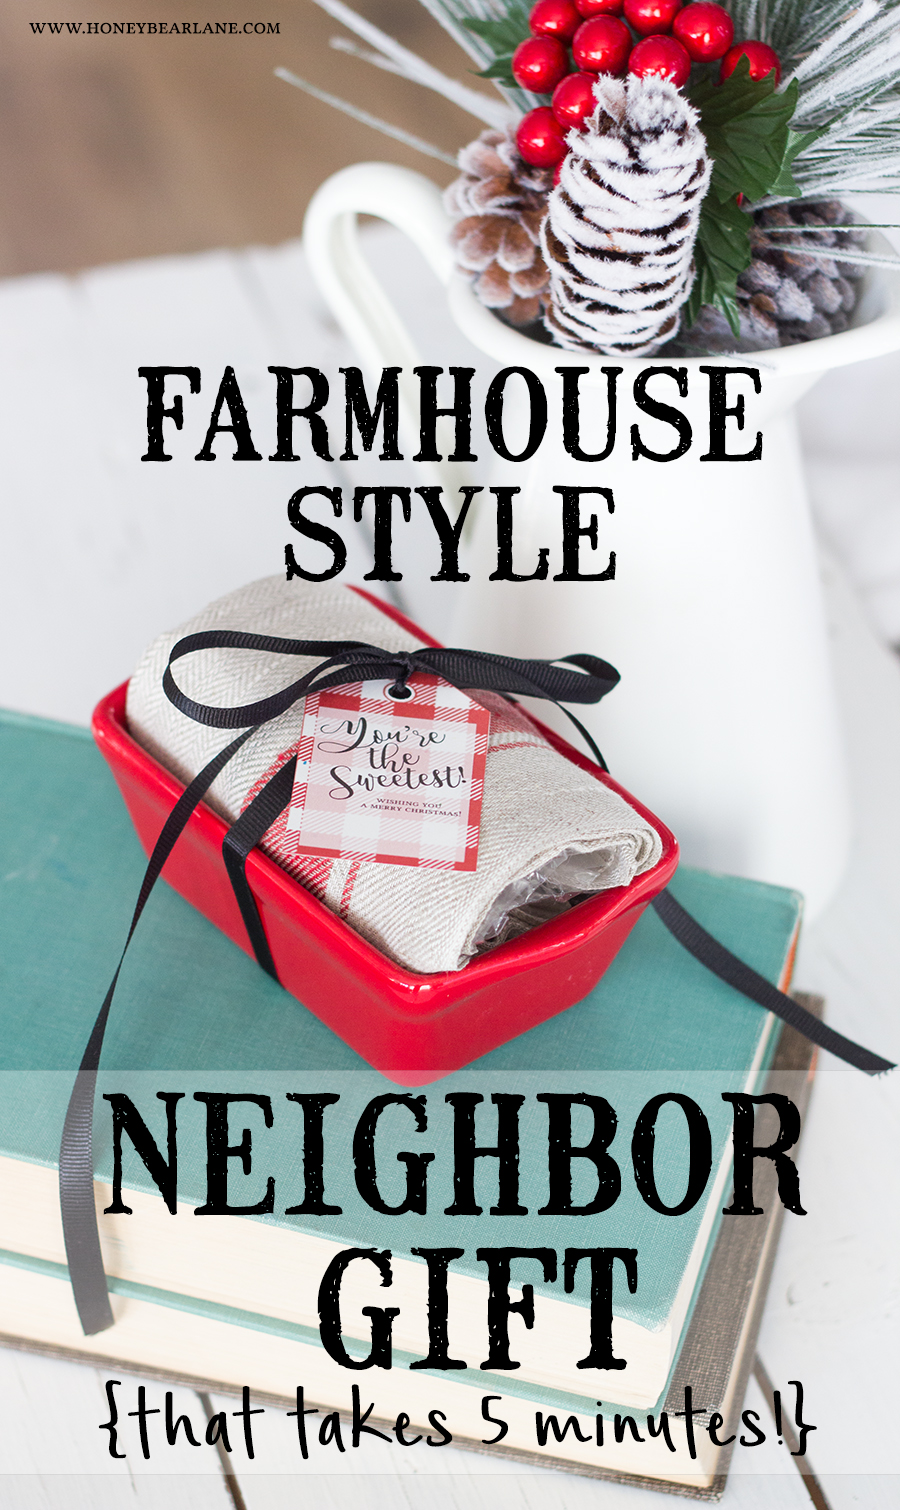 https://www.honeybearlane.com/wp-content/uploads/2016/11/farmhouse-style-neighbor-gift.jpg